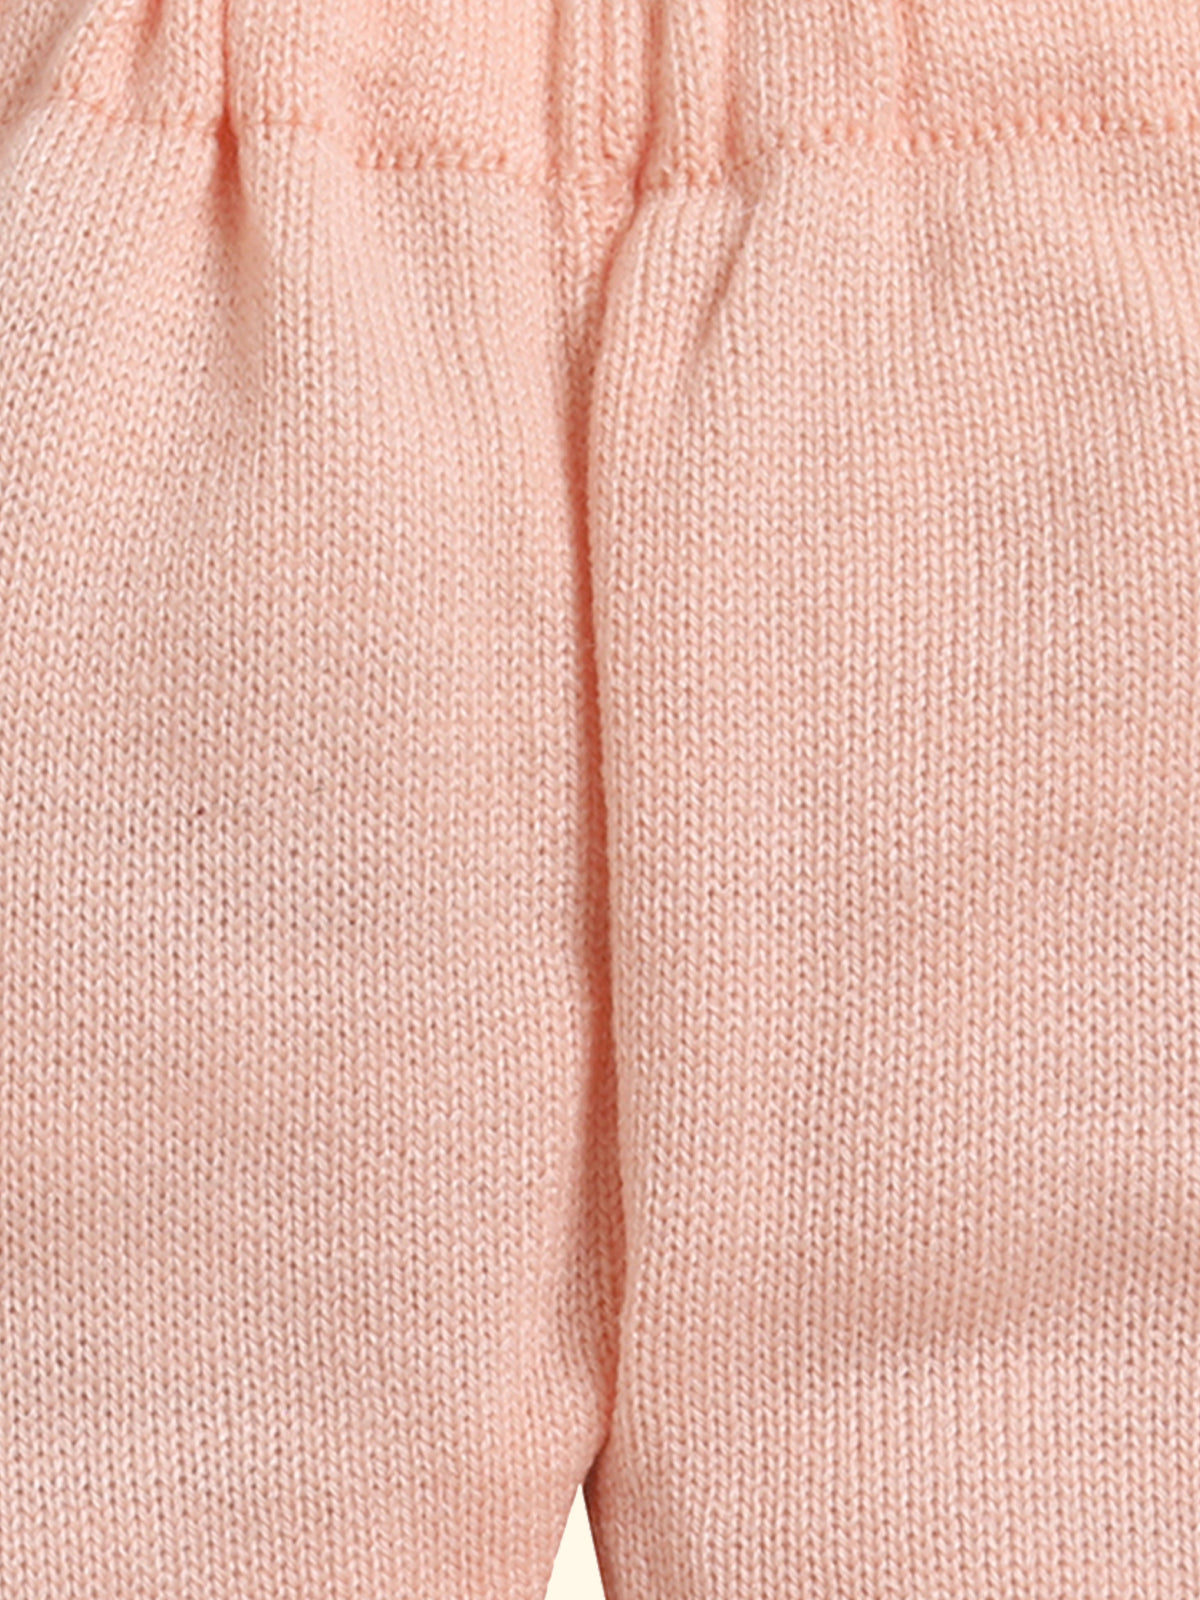 Stripe Pant Peach Color for Infants